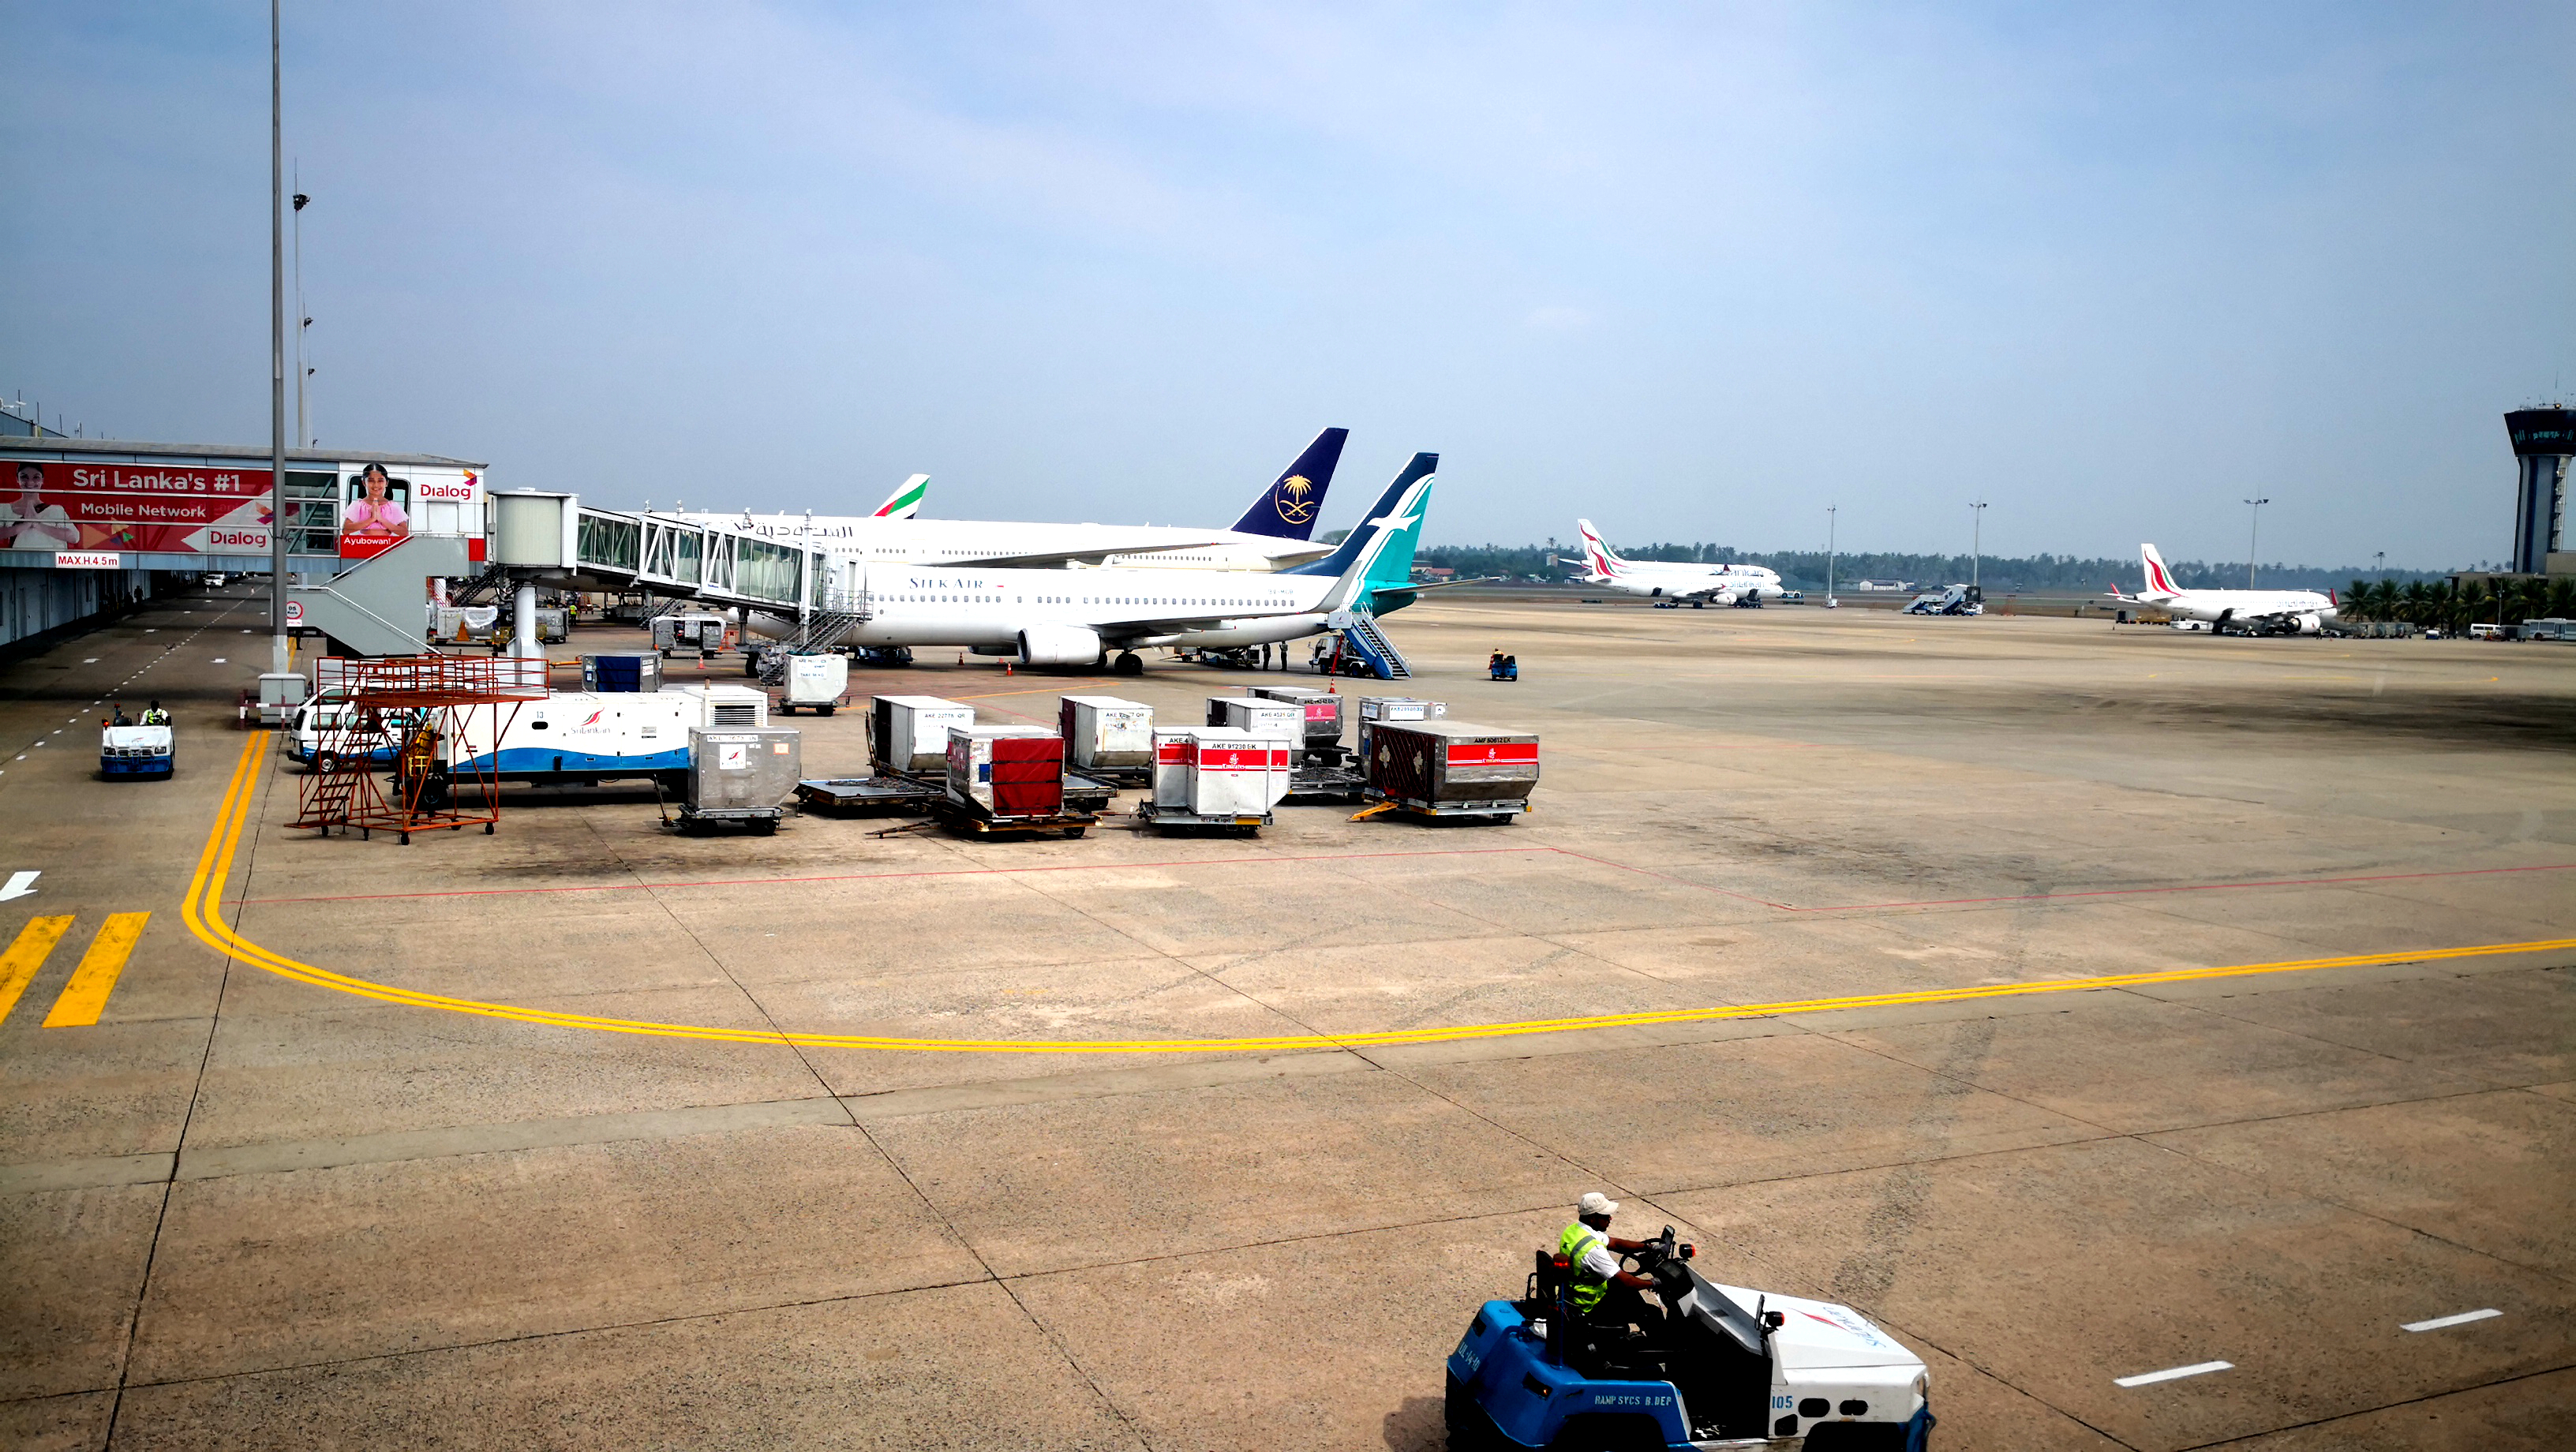 这是我去过的很多机场,看见过的最大行李车